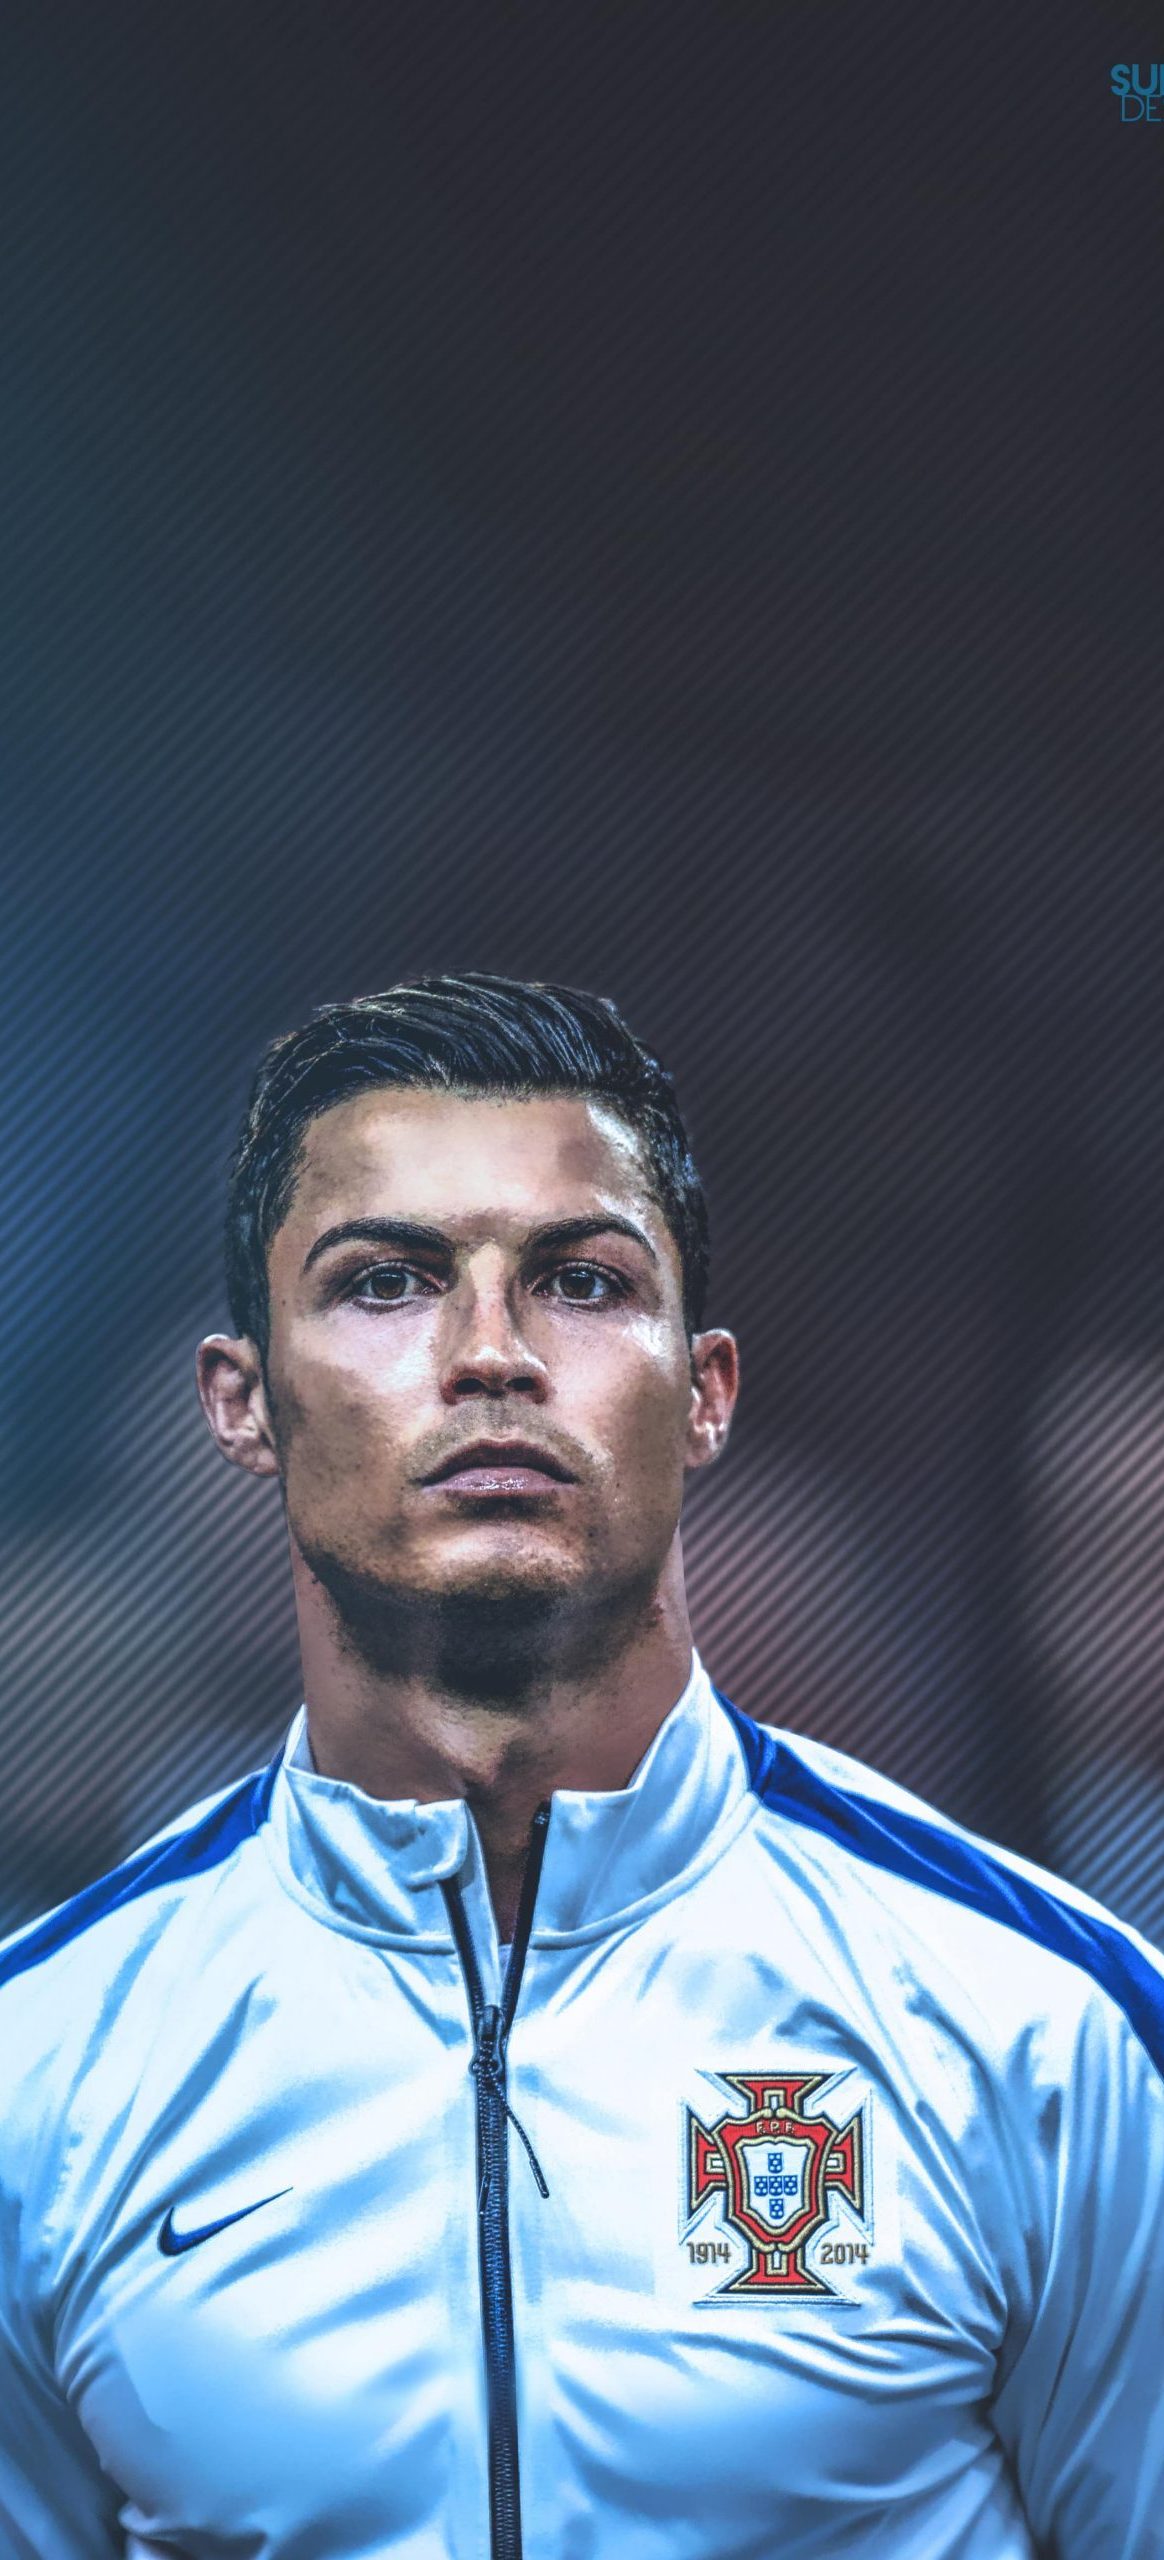 Cristiano Ronaldo Wallpaper Hd - 1164x2560 Wallpaper 